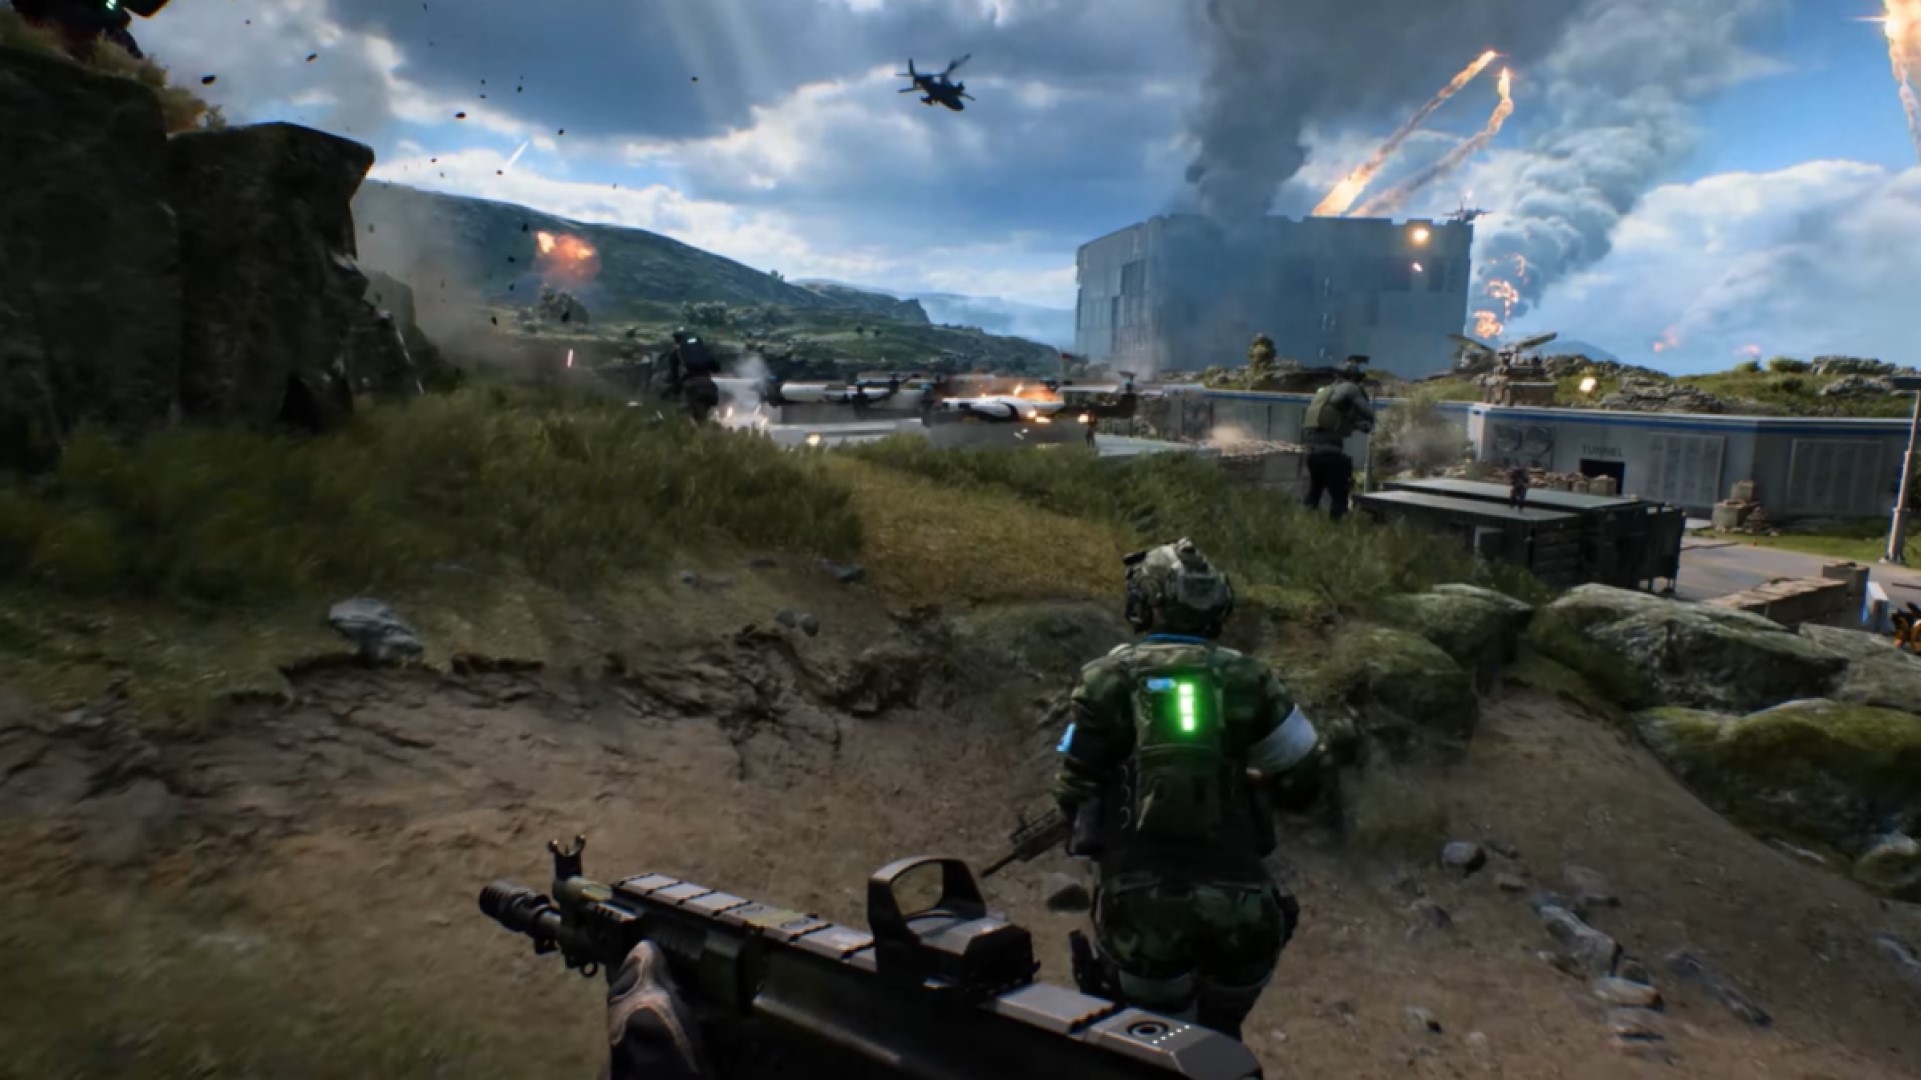 Battlefield 2042' ganha data de lançamento e trailer 